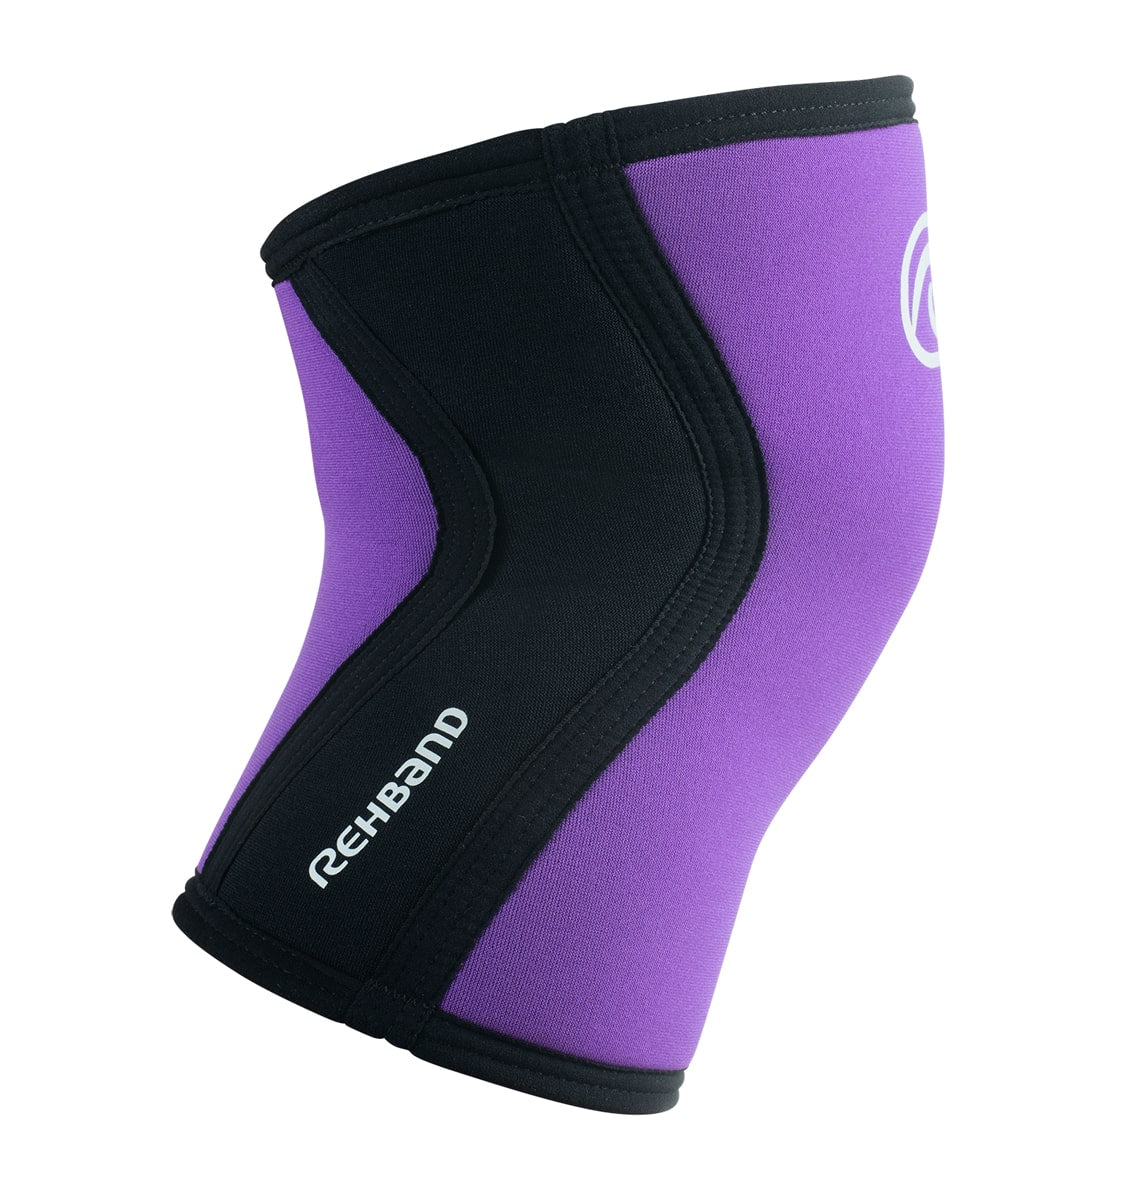 07751 - Rehband Rx Knee Sleeve - Purple/Black - 5mm - Side